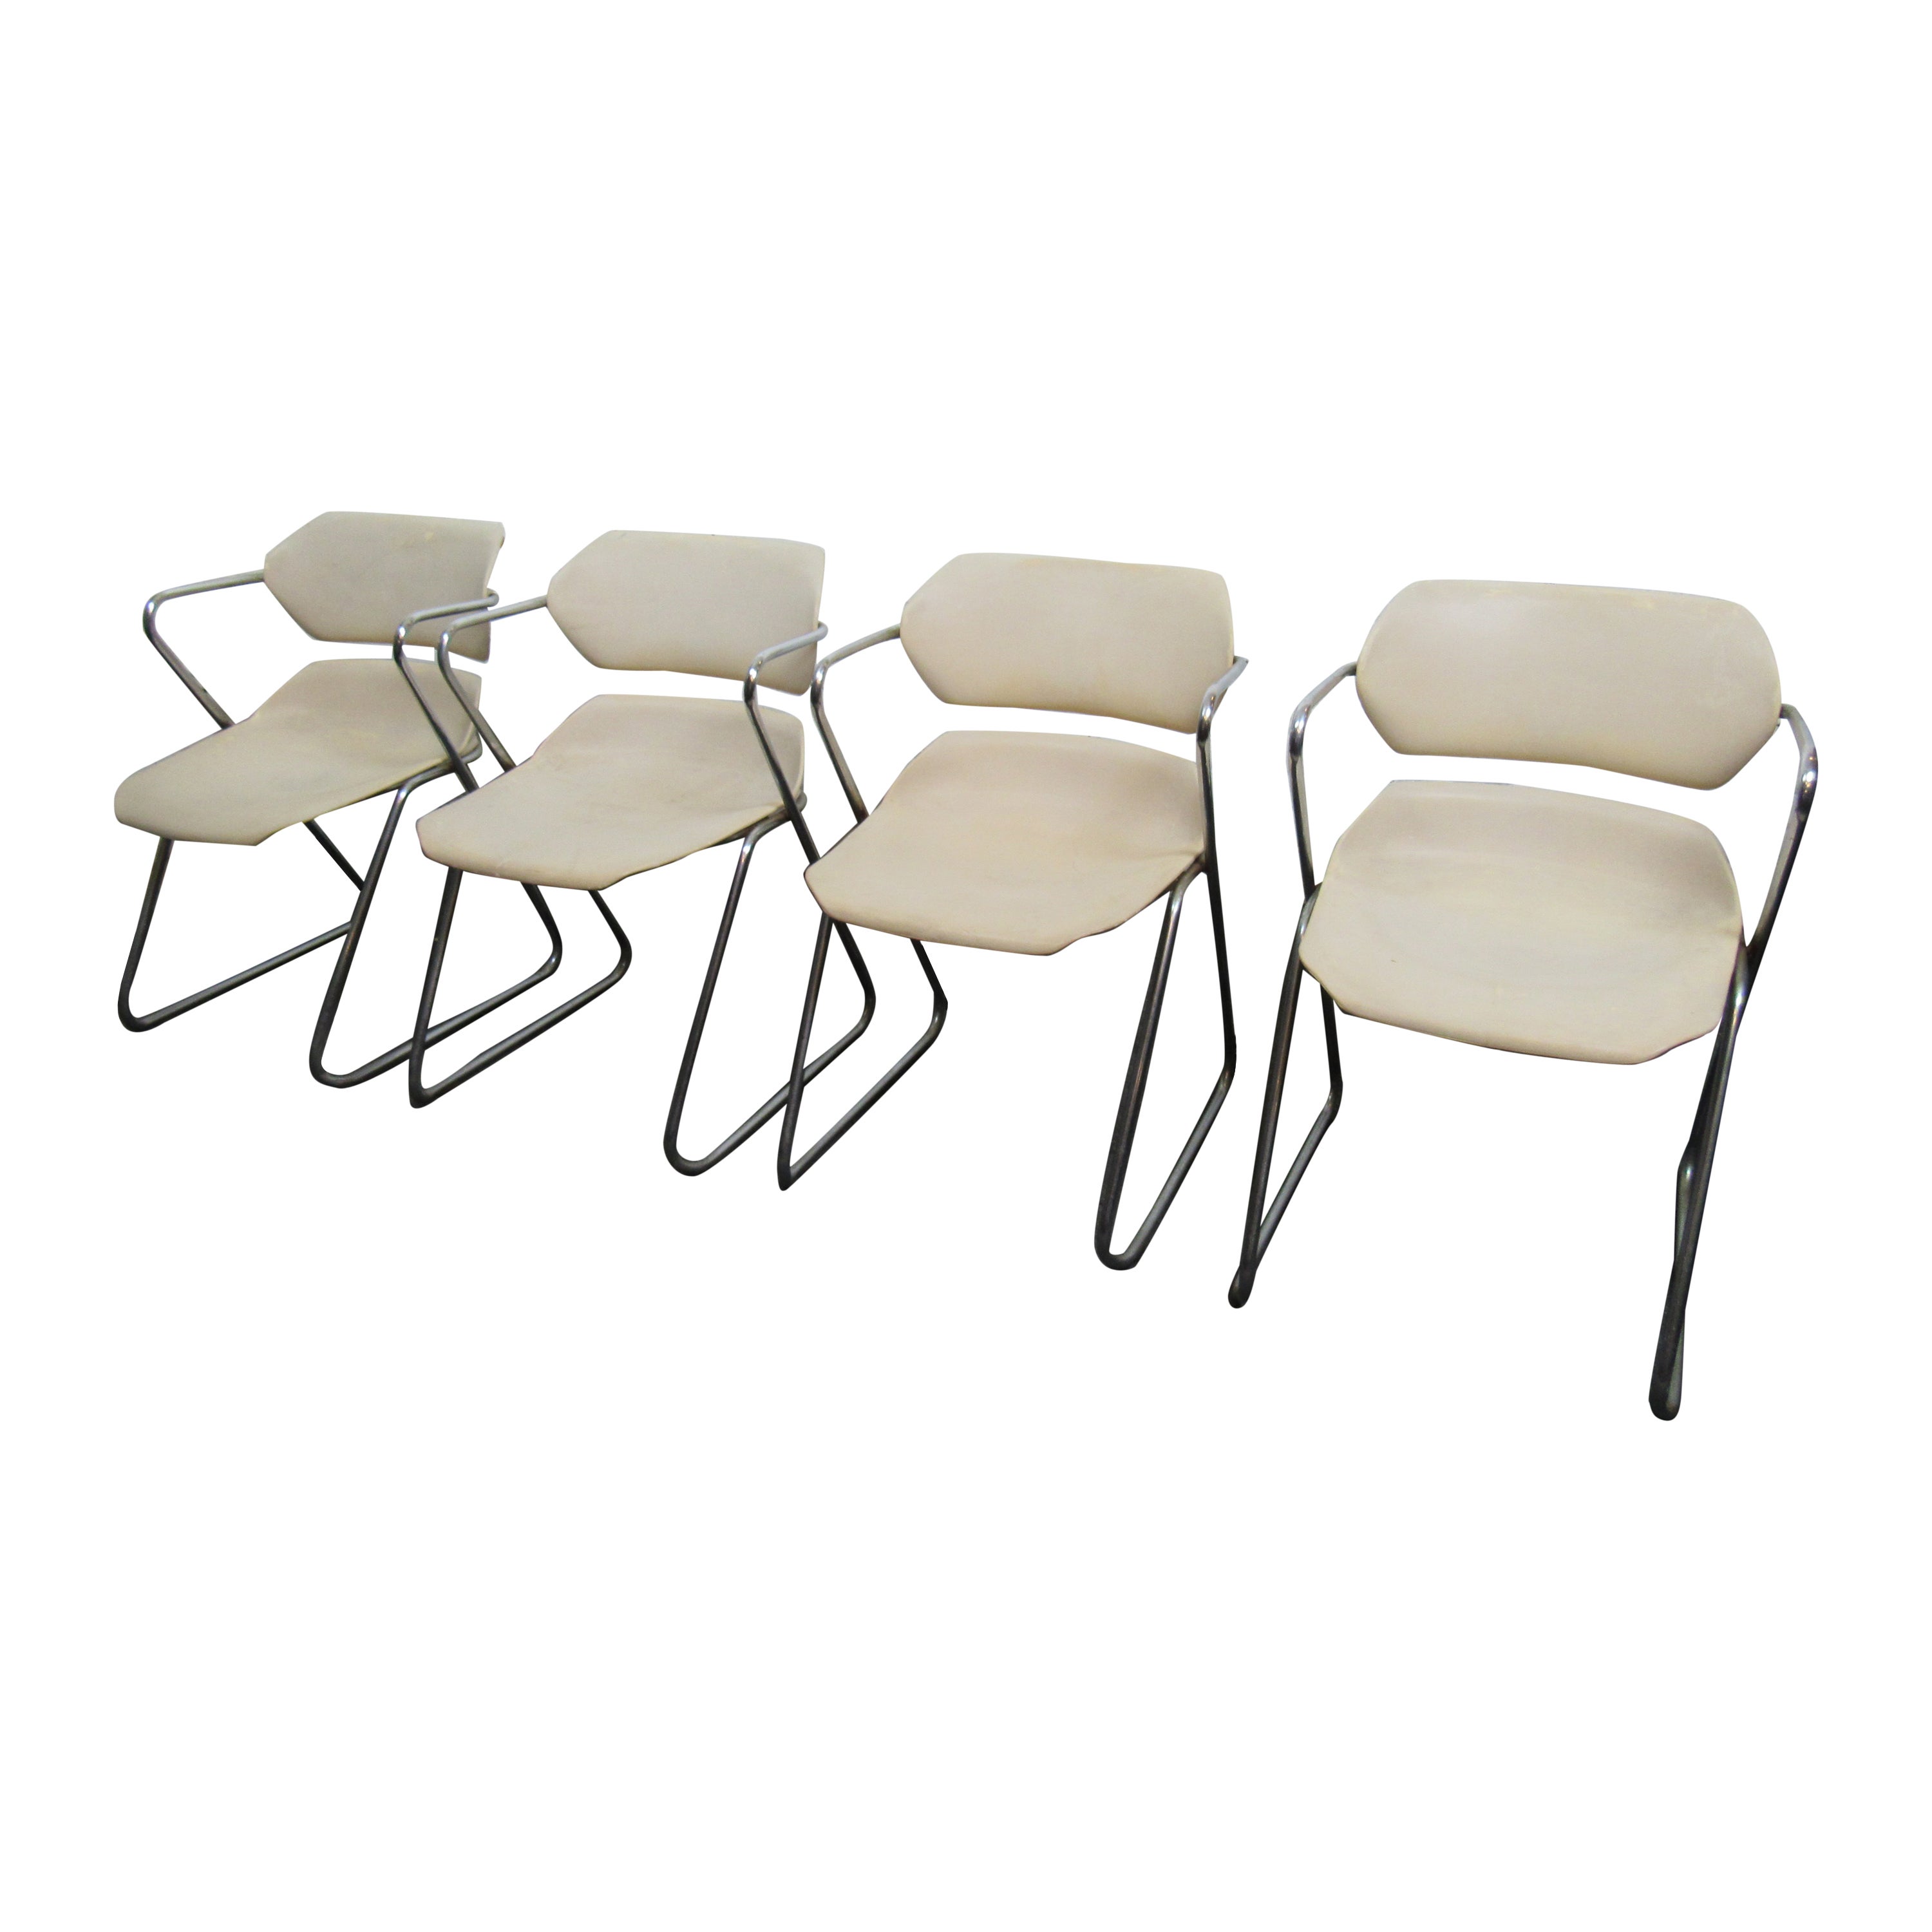 Ensemble de quatre chaises blanches « Acton Stacker » par American Seating